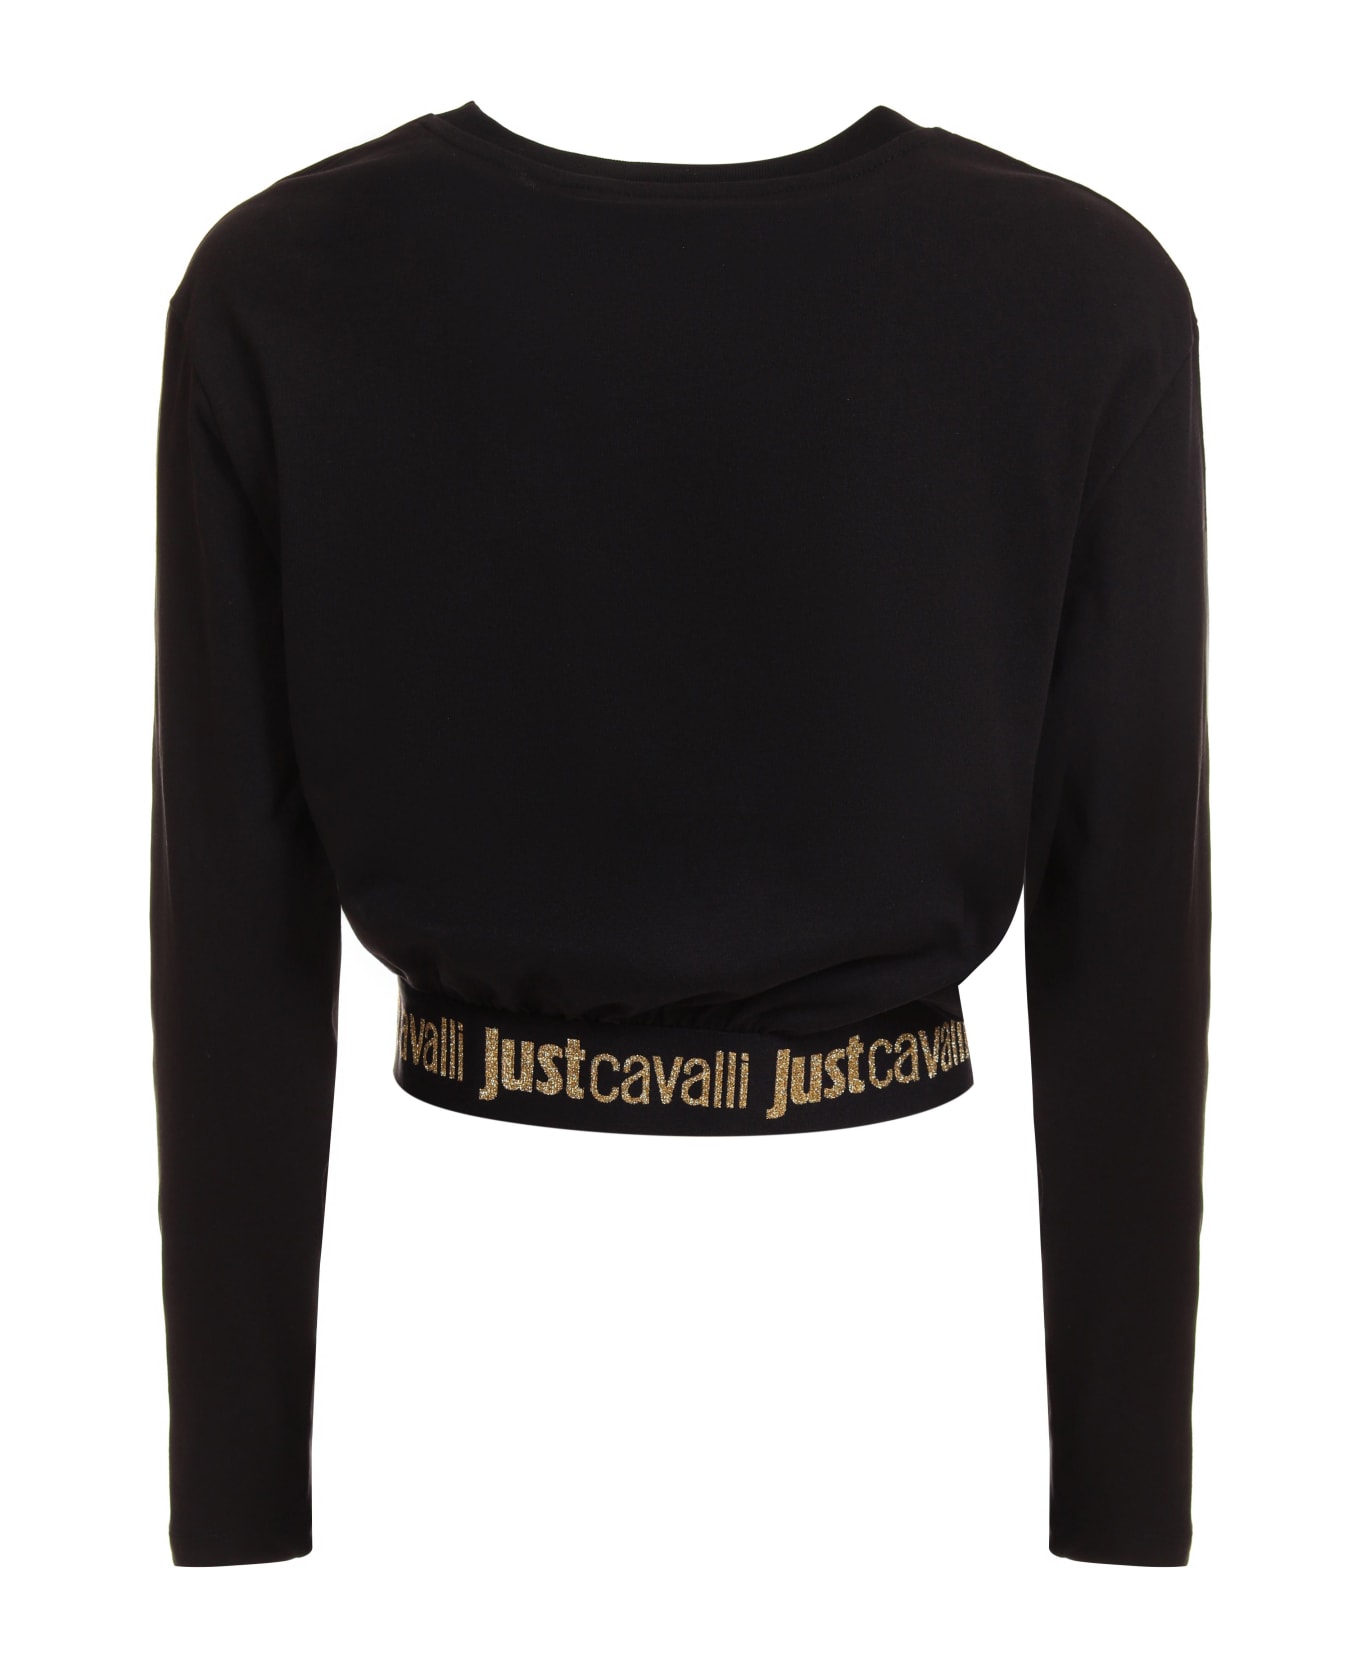 Just Cavalli Women's Crop Top - Black